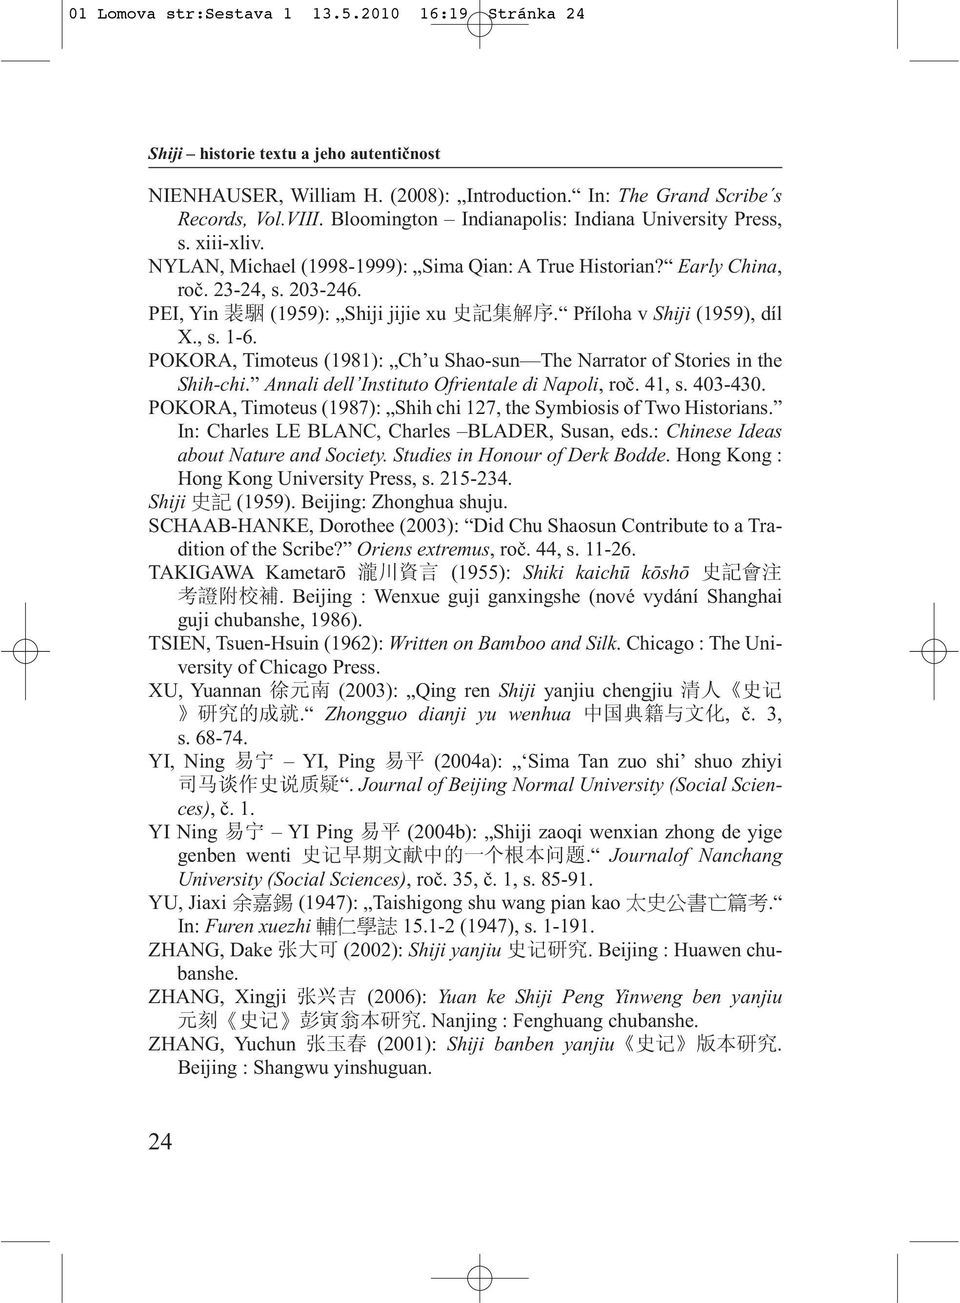 PEI, Yin 裴 駰 (1959): Shiji jijie xu 史 記 集 解 序. Příloha v Shiji (1959), díl X., s. 1-6. POKORA, Timoteus (1981): Ch u Shao-sun The Narrator of Stories in the Shih-chi.